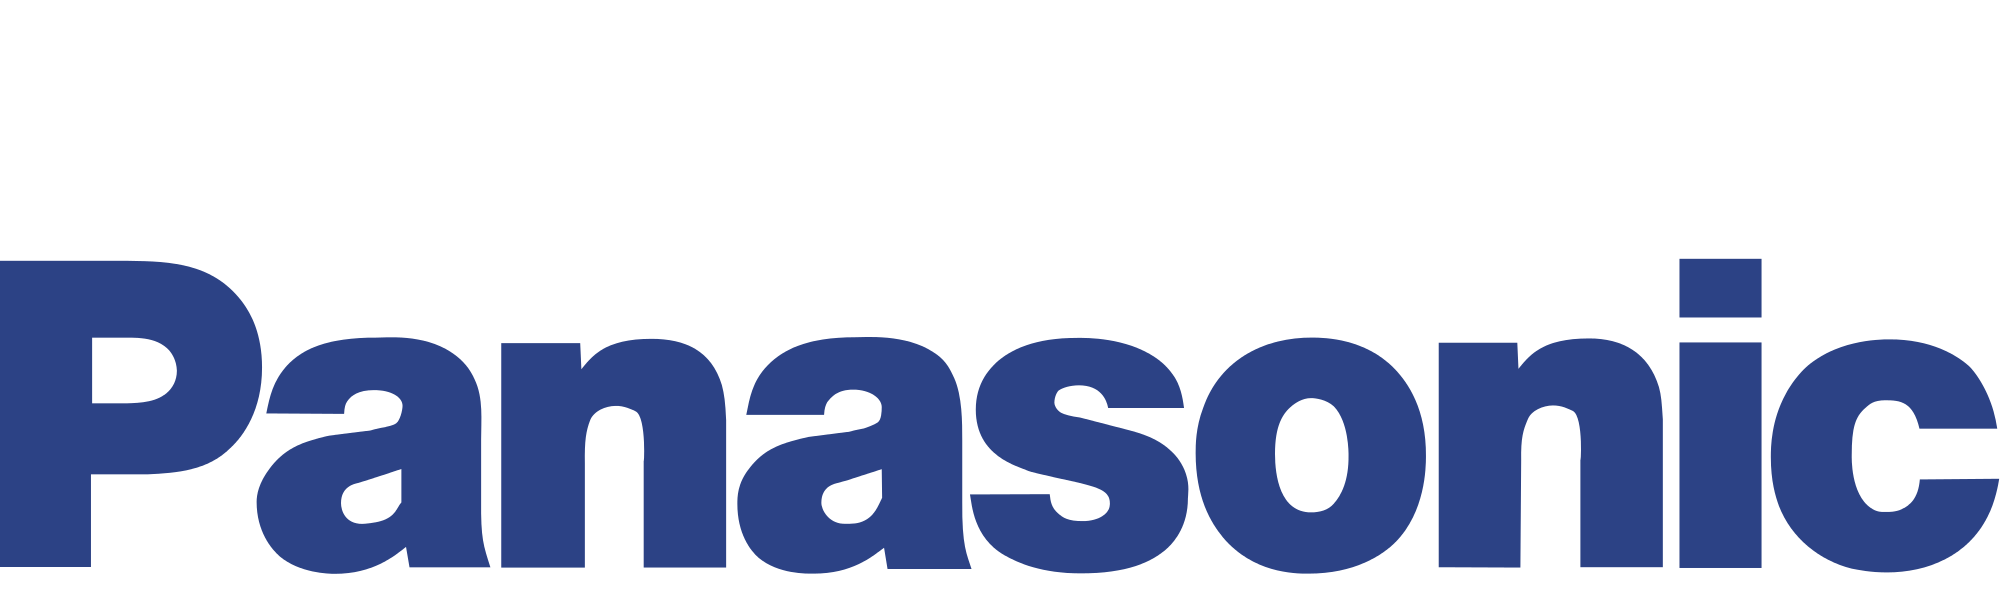 Panasonic кондиционеры логотип